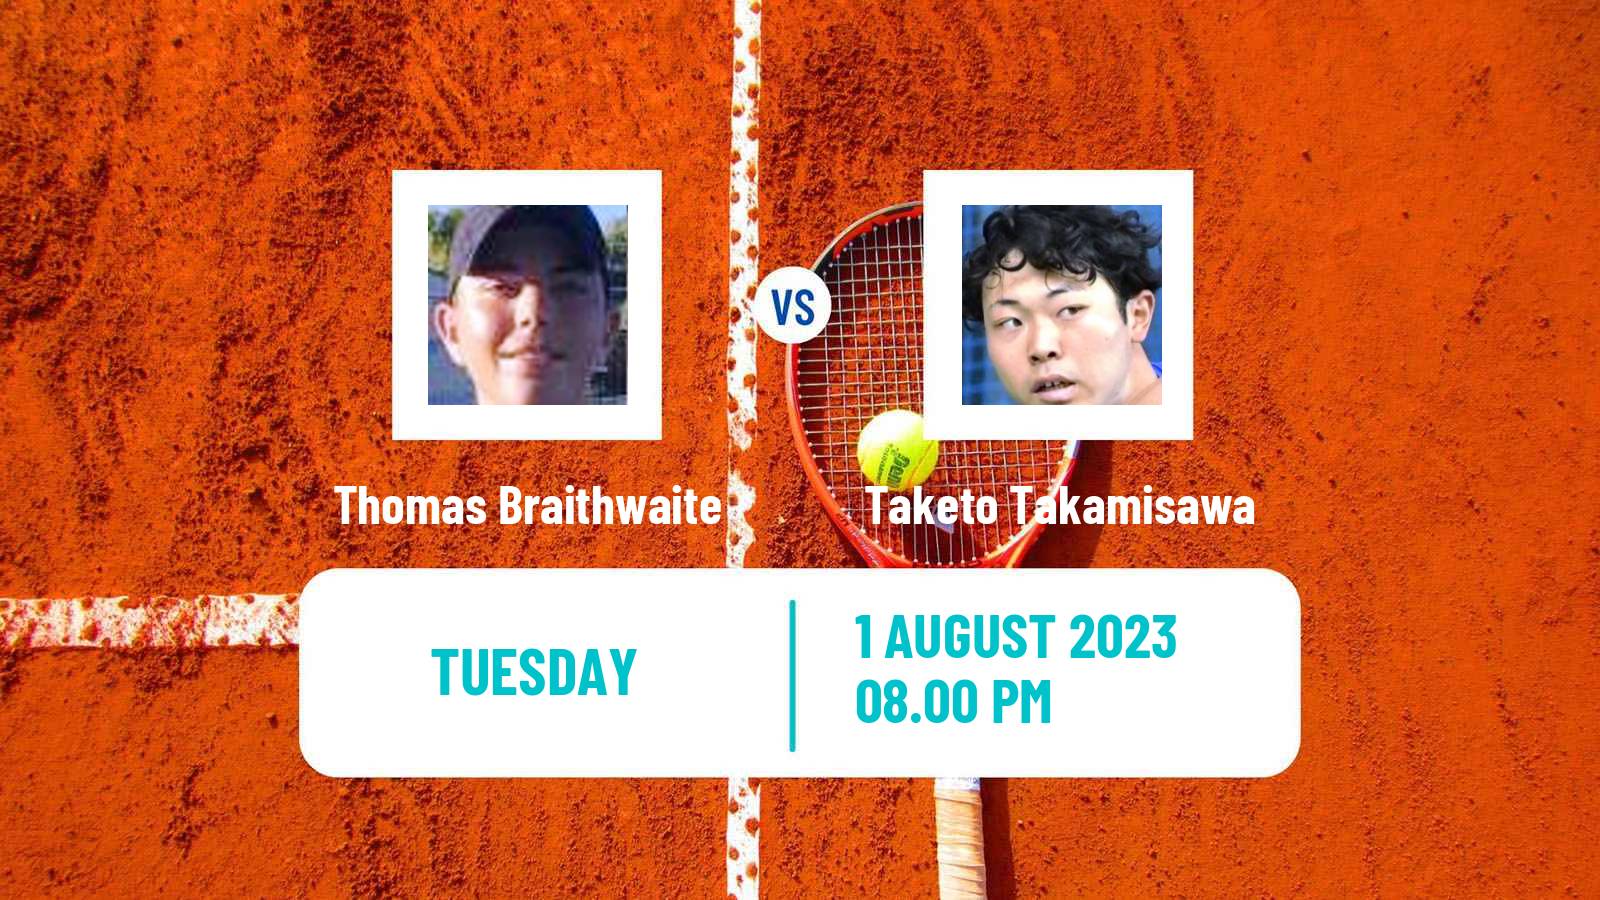 Tennis ITF M15 Caloundra 2 Men Thomas Braithwaite - Taketo Takamisawa